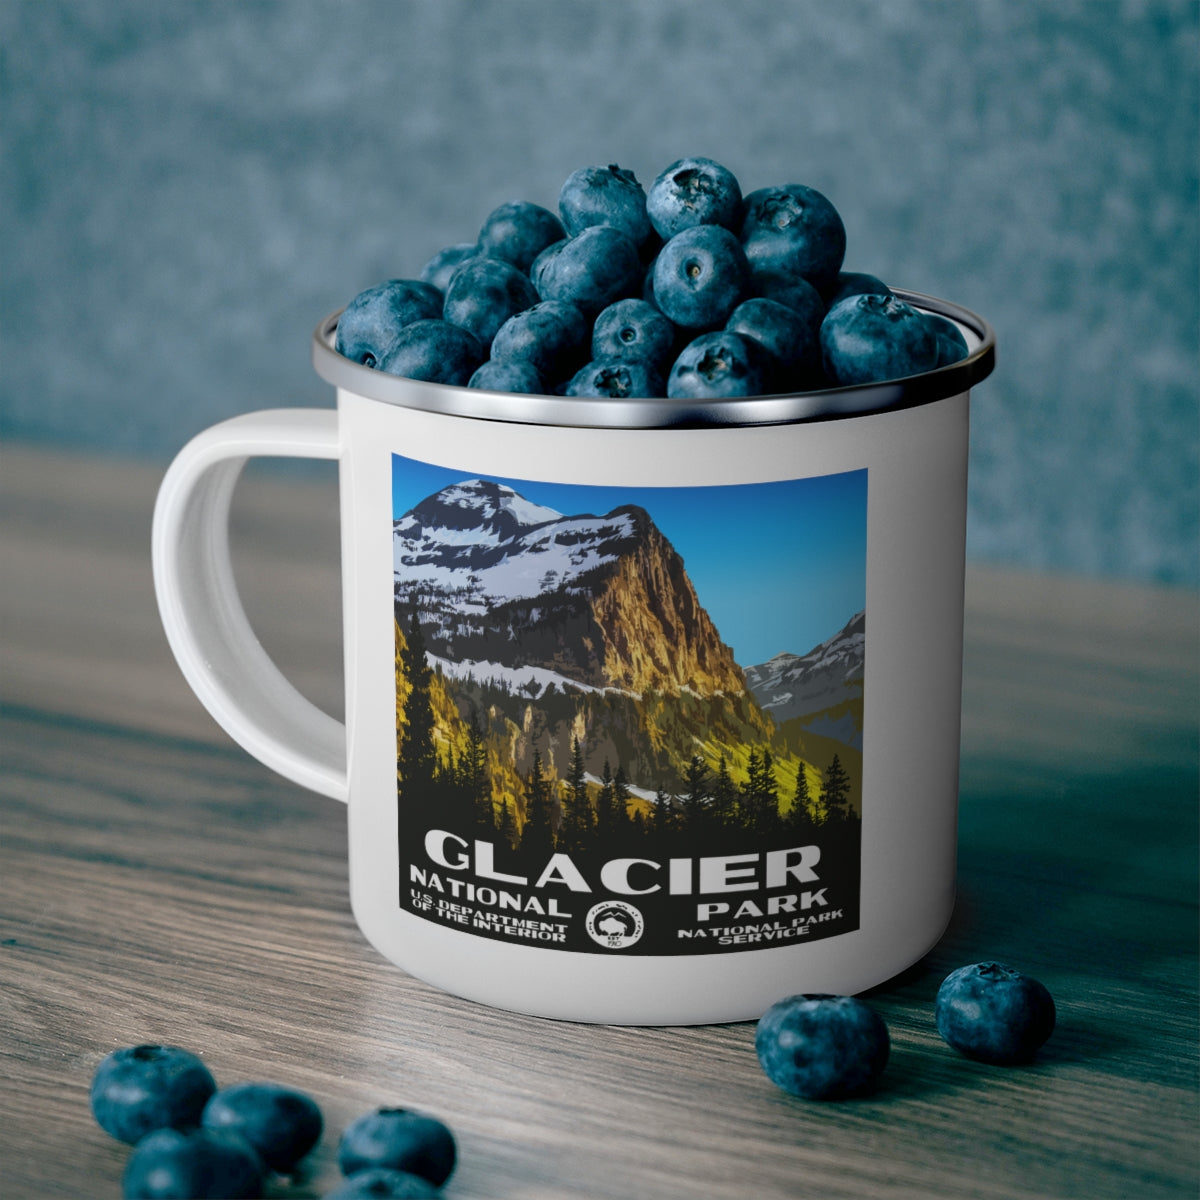 Glacier National Park Enamel Camping Mug